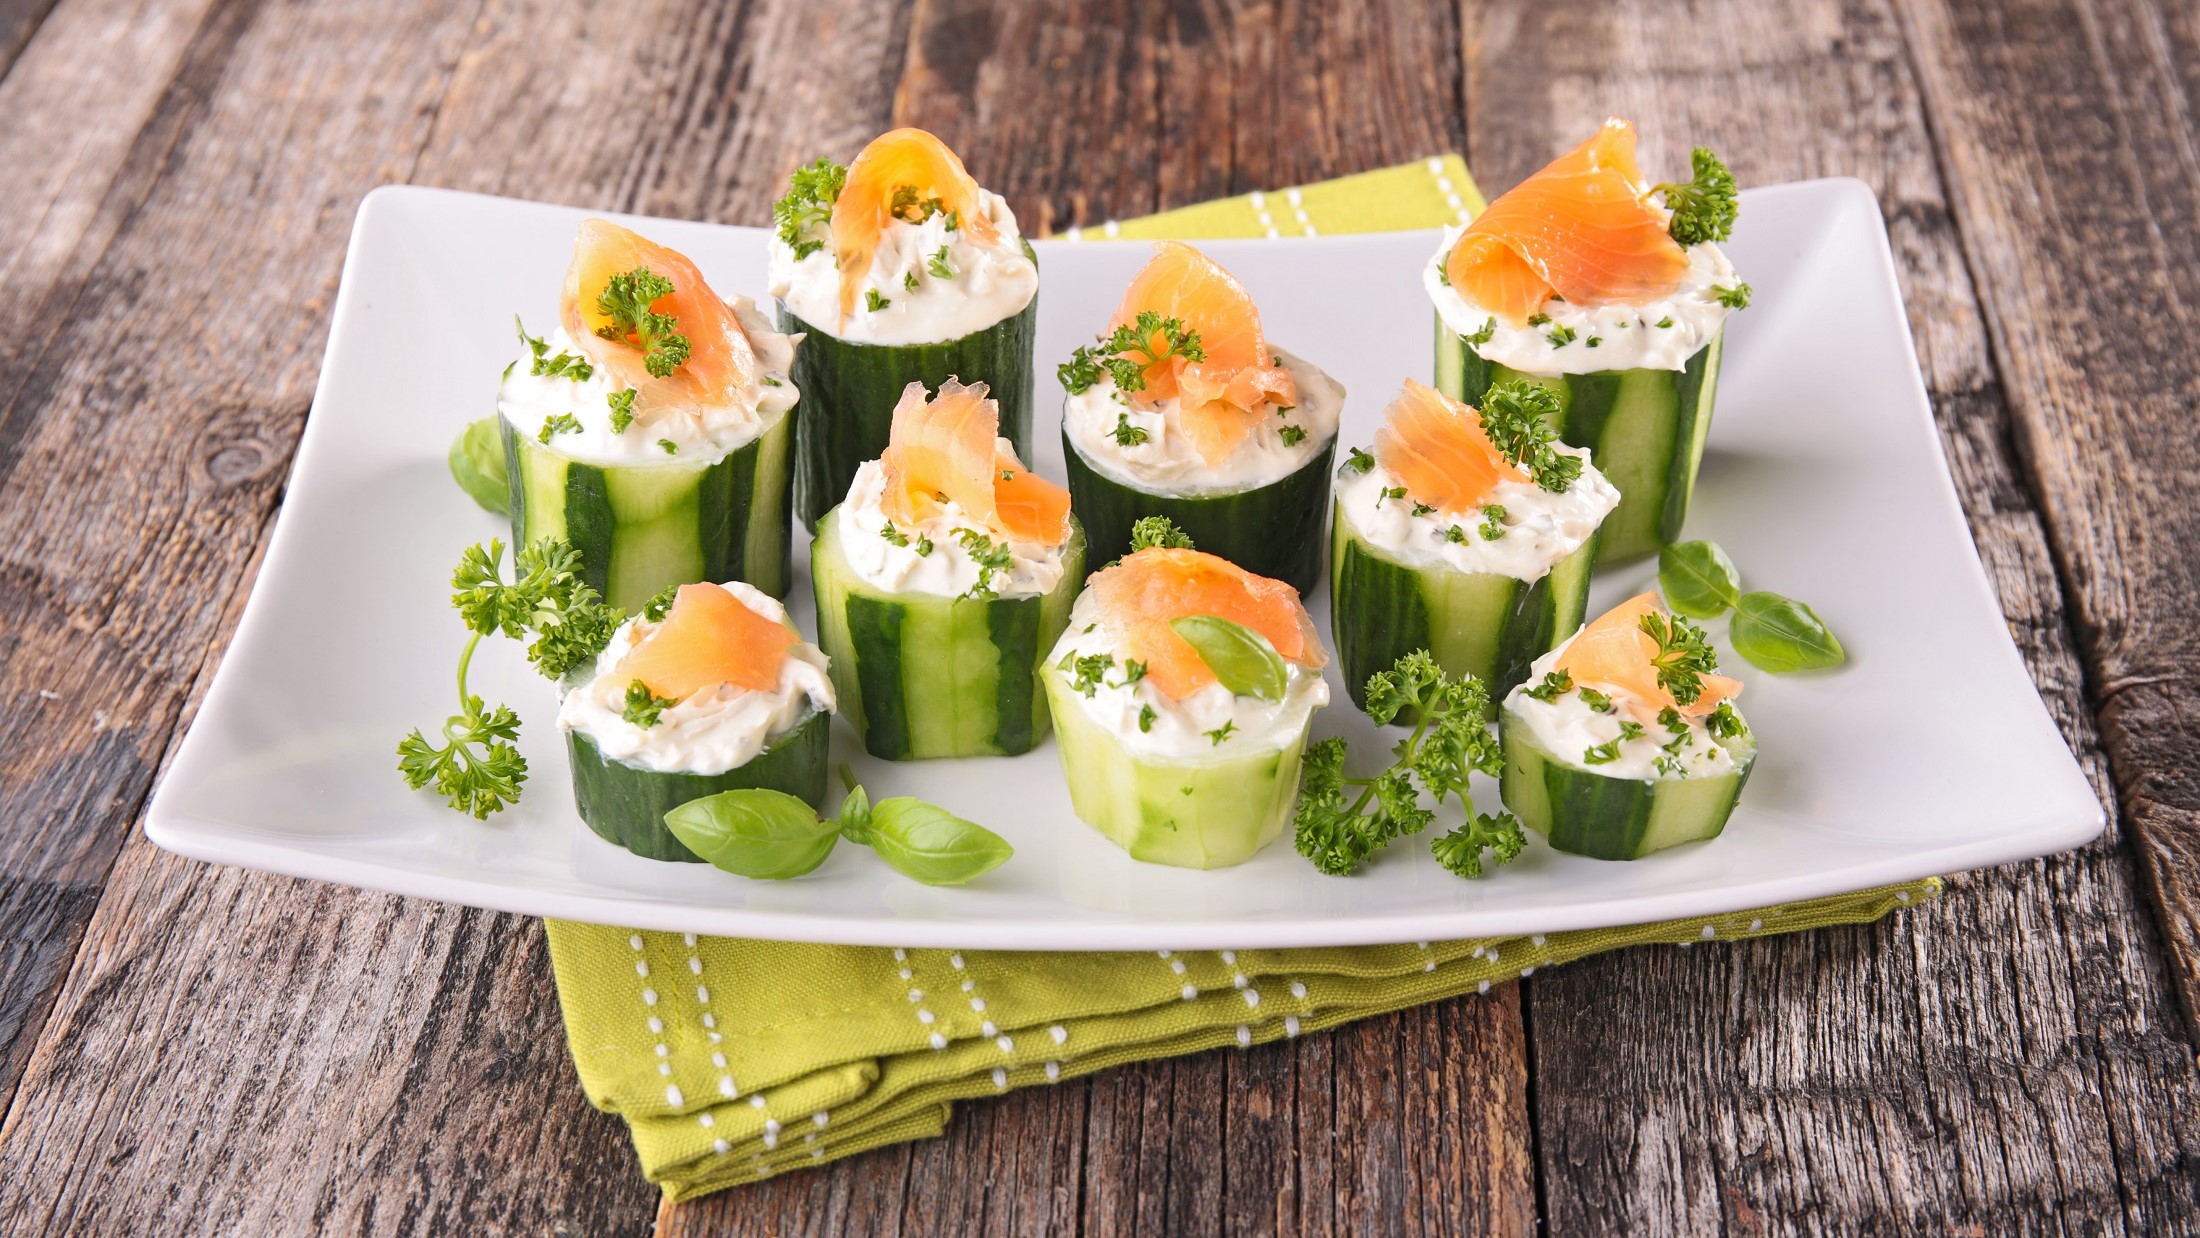 Frontal: Mehrere mit Lachs gefüllte Salatgurken stehen auf einem weißen Teller. Unter der Fingerfood-Platte liegt ein grünes Tuch mit einem weißen Muster. Und das liegt auf einem Boden aus groben Holzplanken.